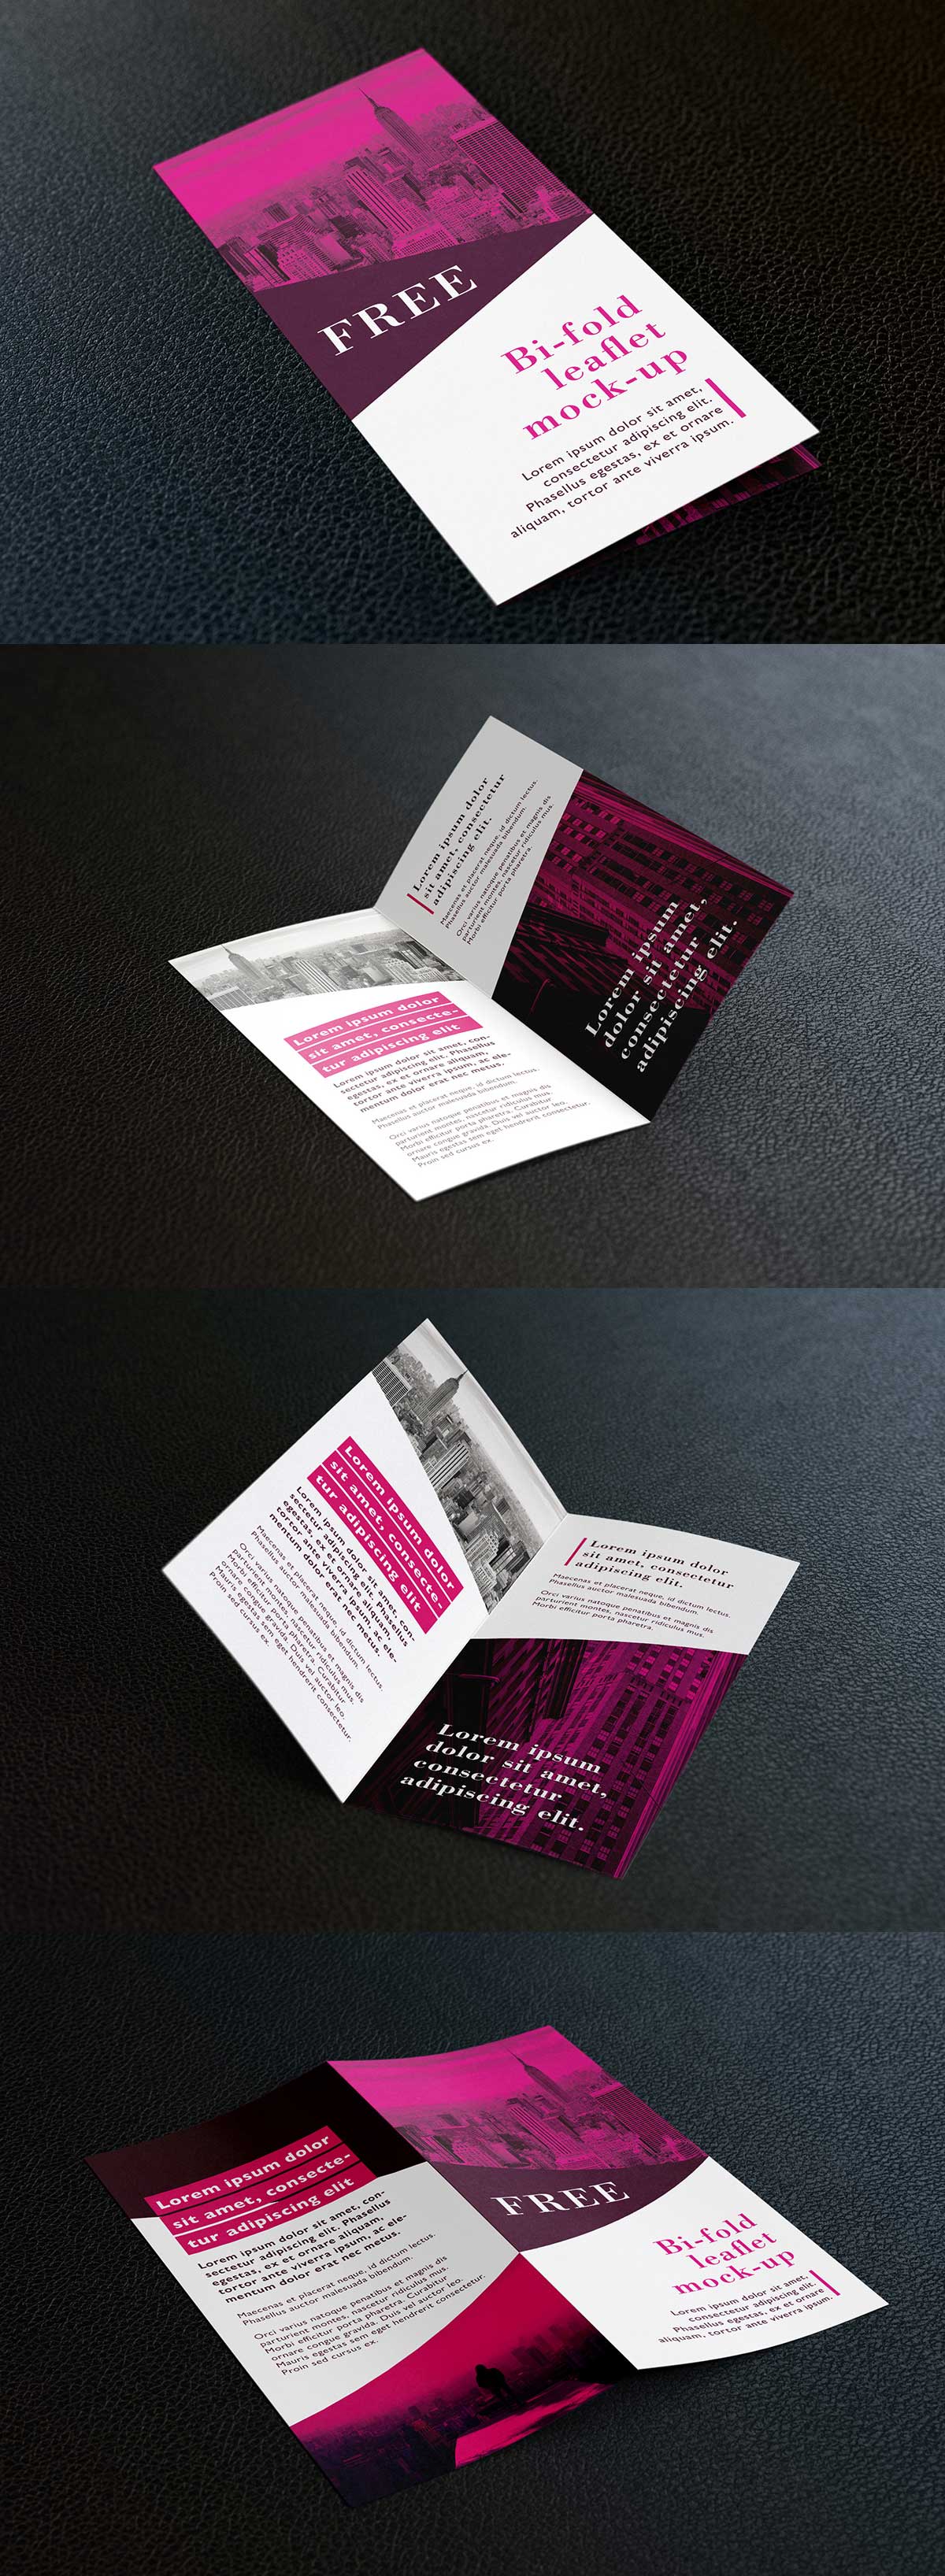 Free-bi-fold-DL-leaflet-mockup-PSD